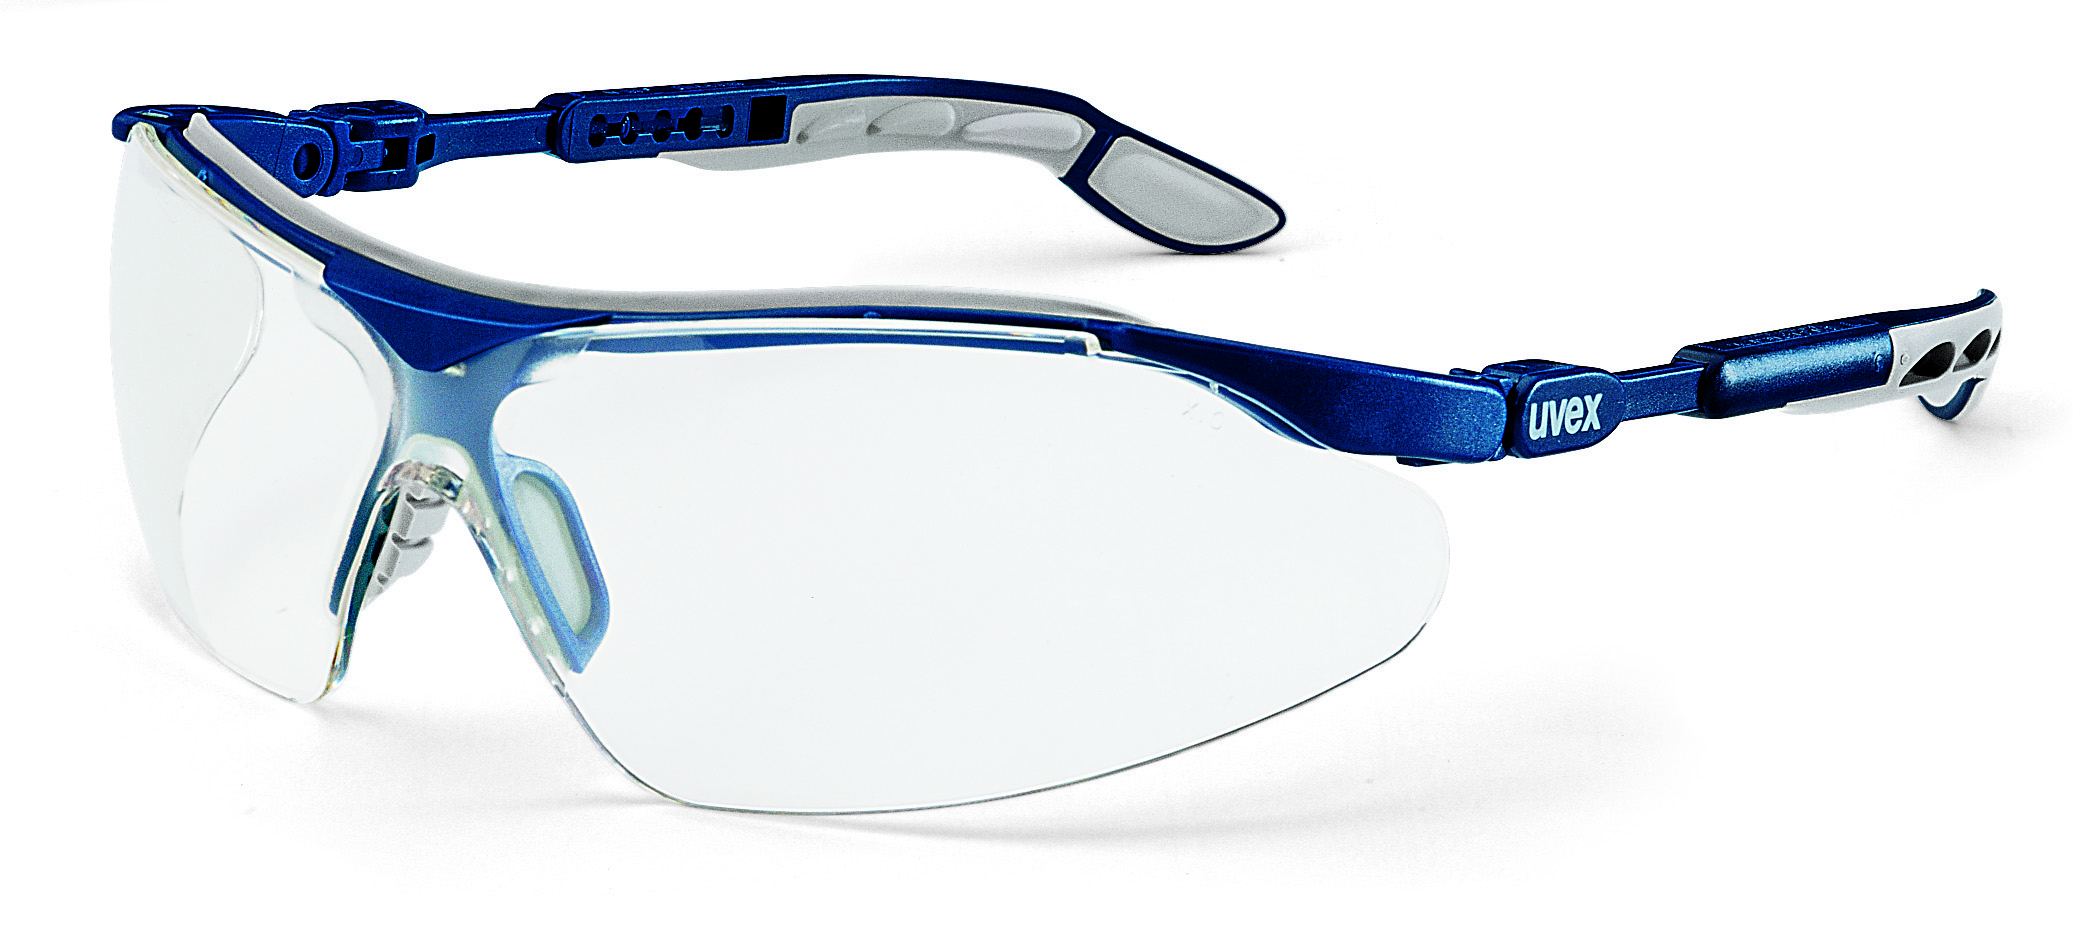 Brýle uvex i-vo Kód produktu: 9160285, Provedení zorníku: PC čirý/UV 2-1,2; SV. excellence, rám. modrý/šedý